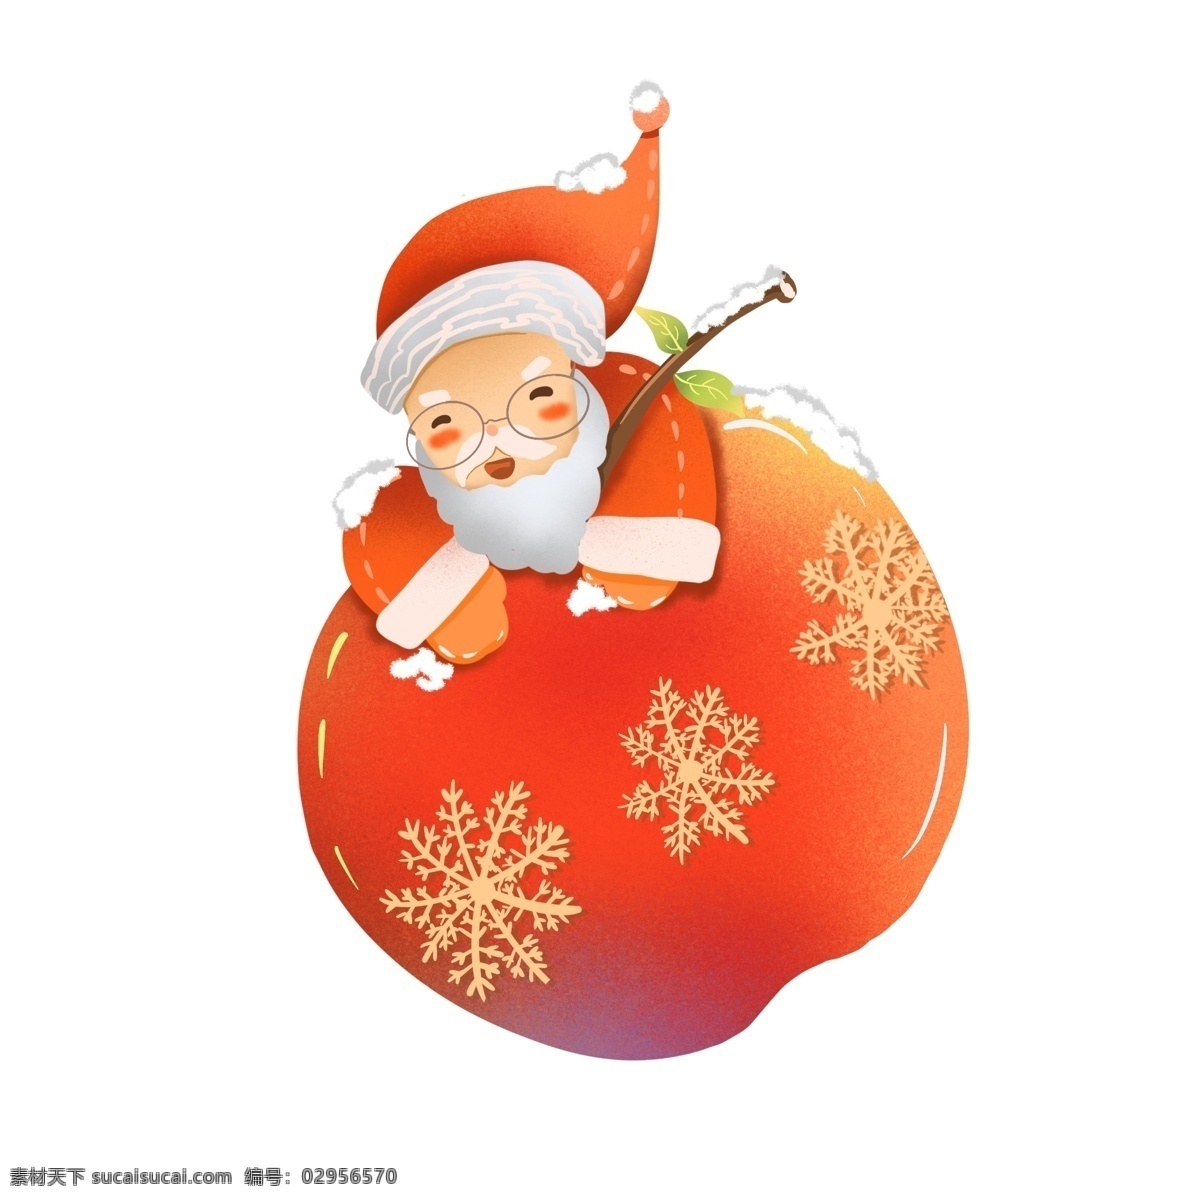 圣诞 平安 果 商用 插画 圣诞节 平安果 圣诞老人 红苹果 小清新